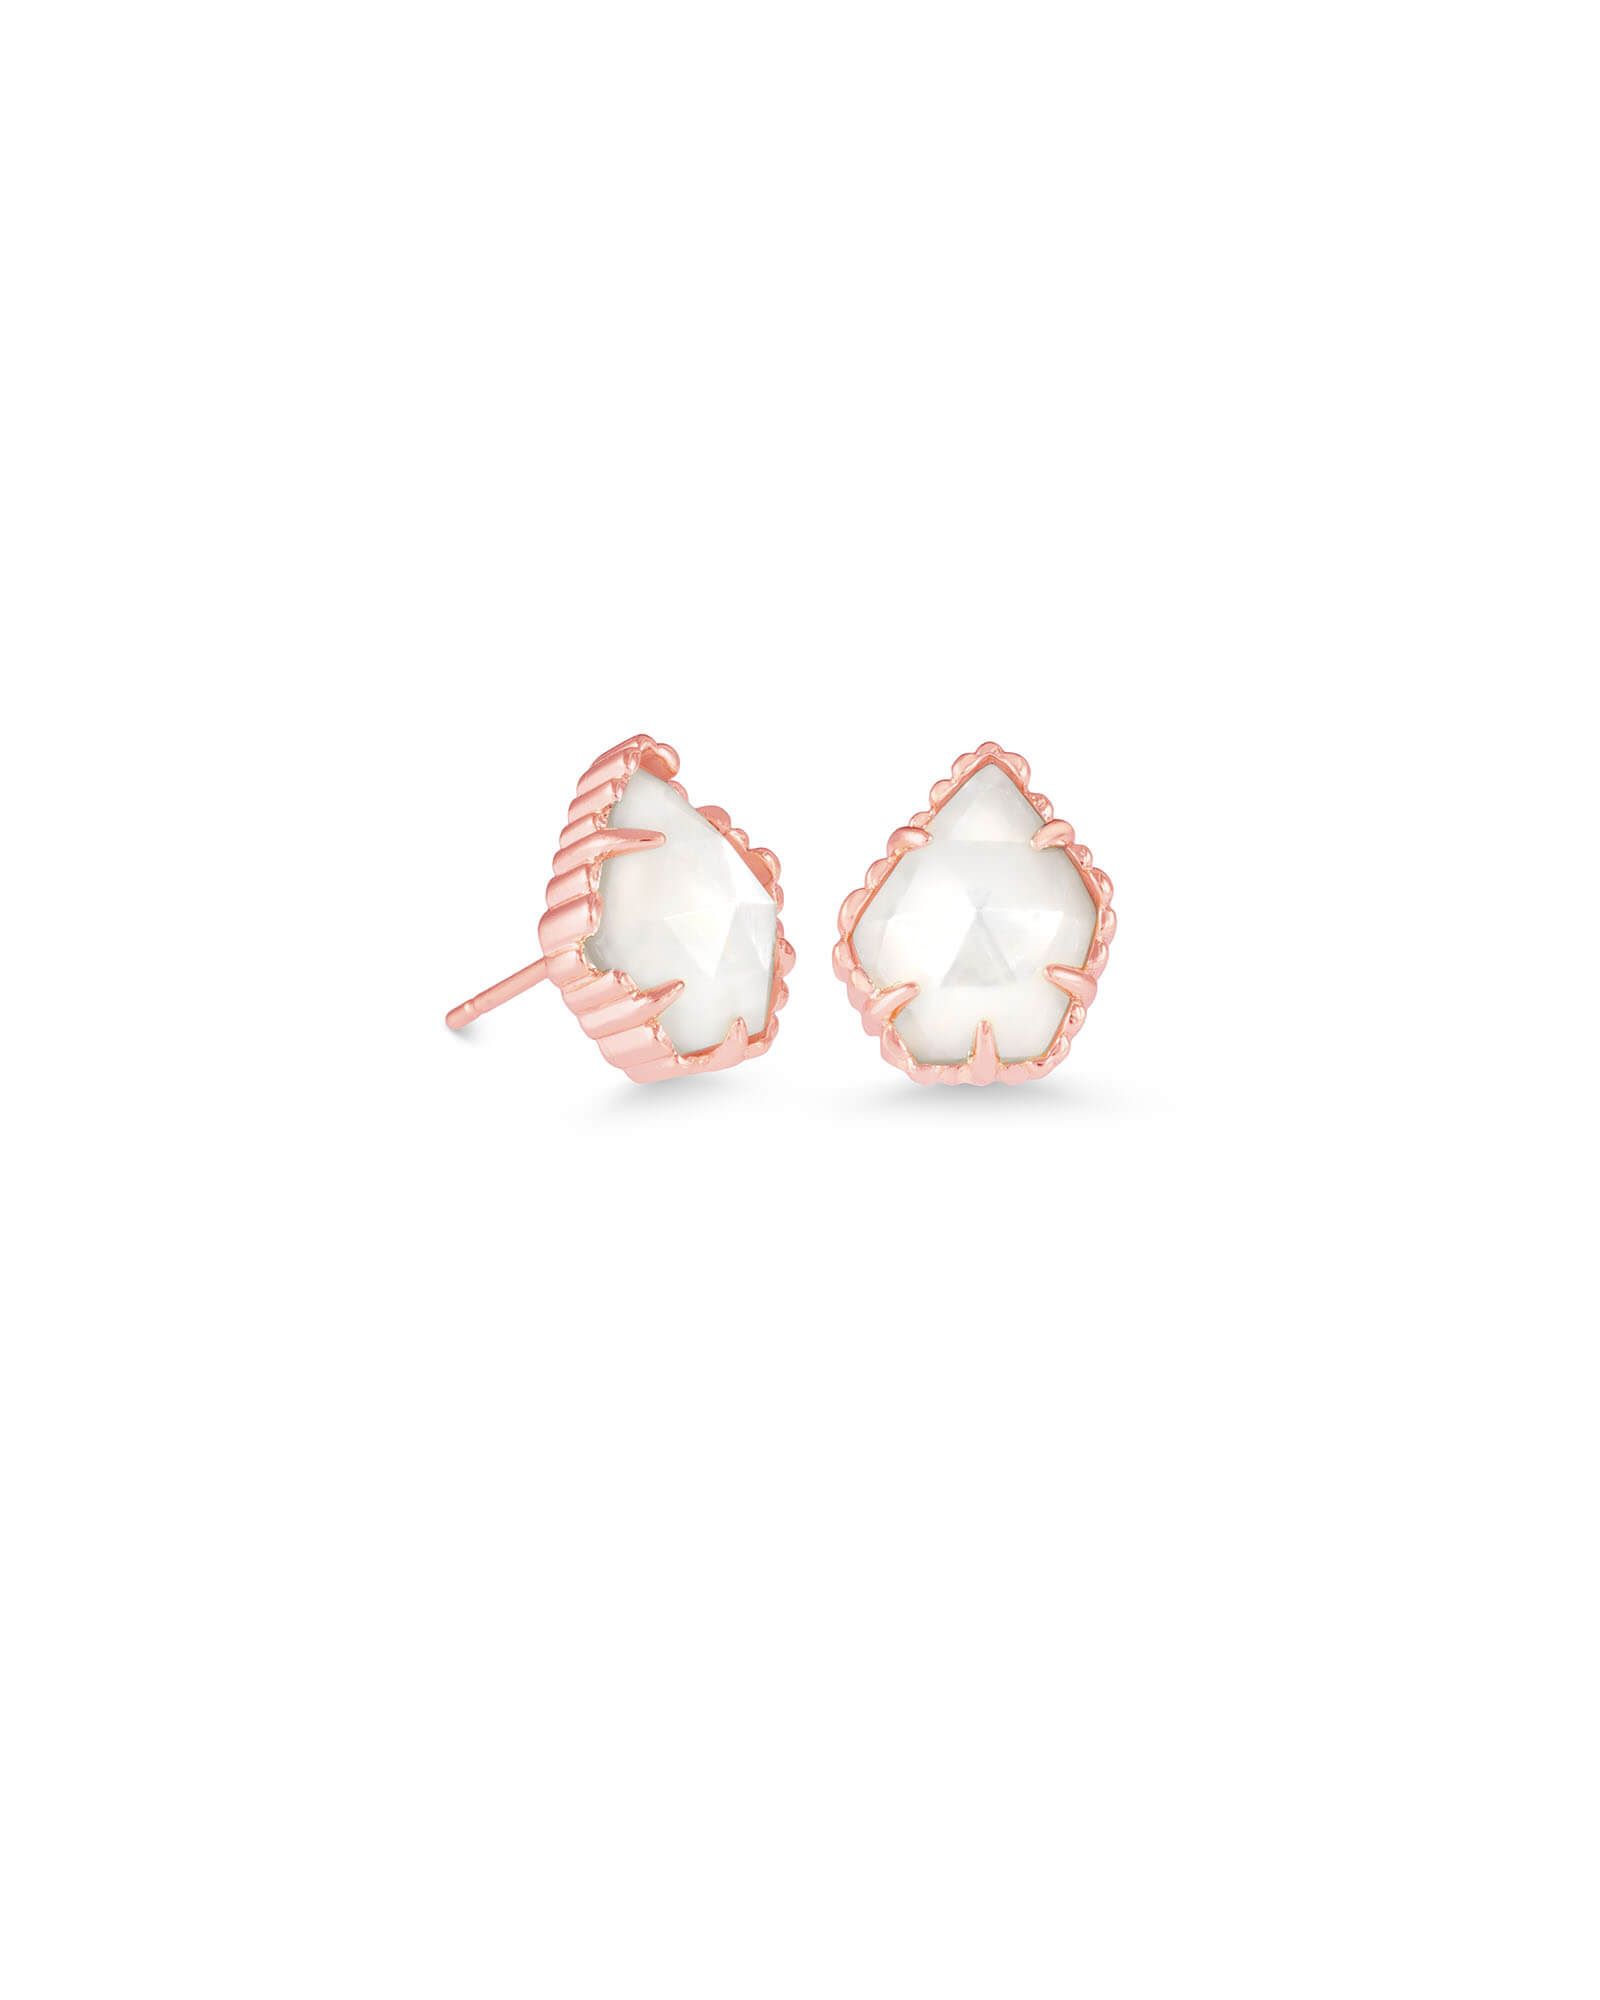 Tessa Rose Gold Stud Earrings in Ivory Pearl | Kendra Scott